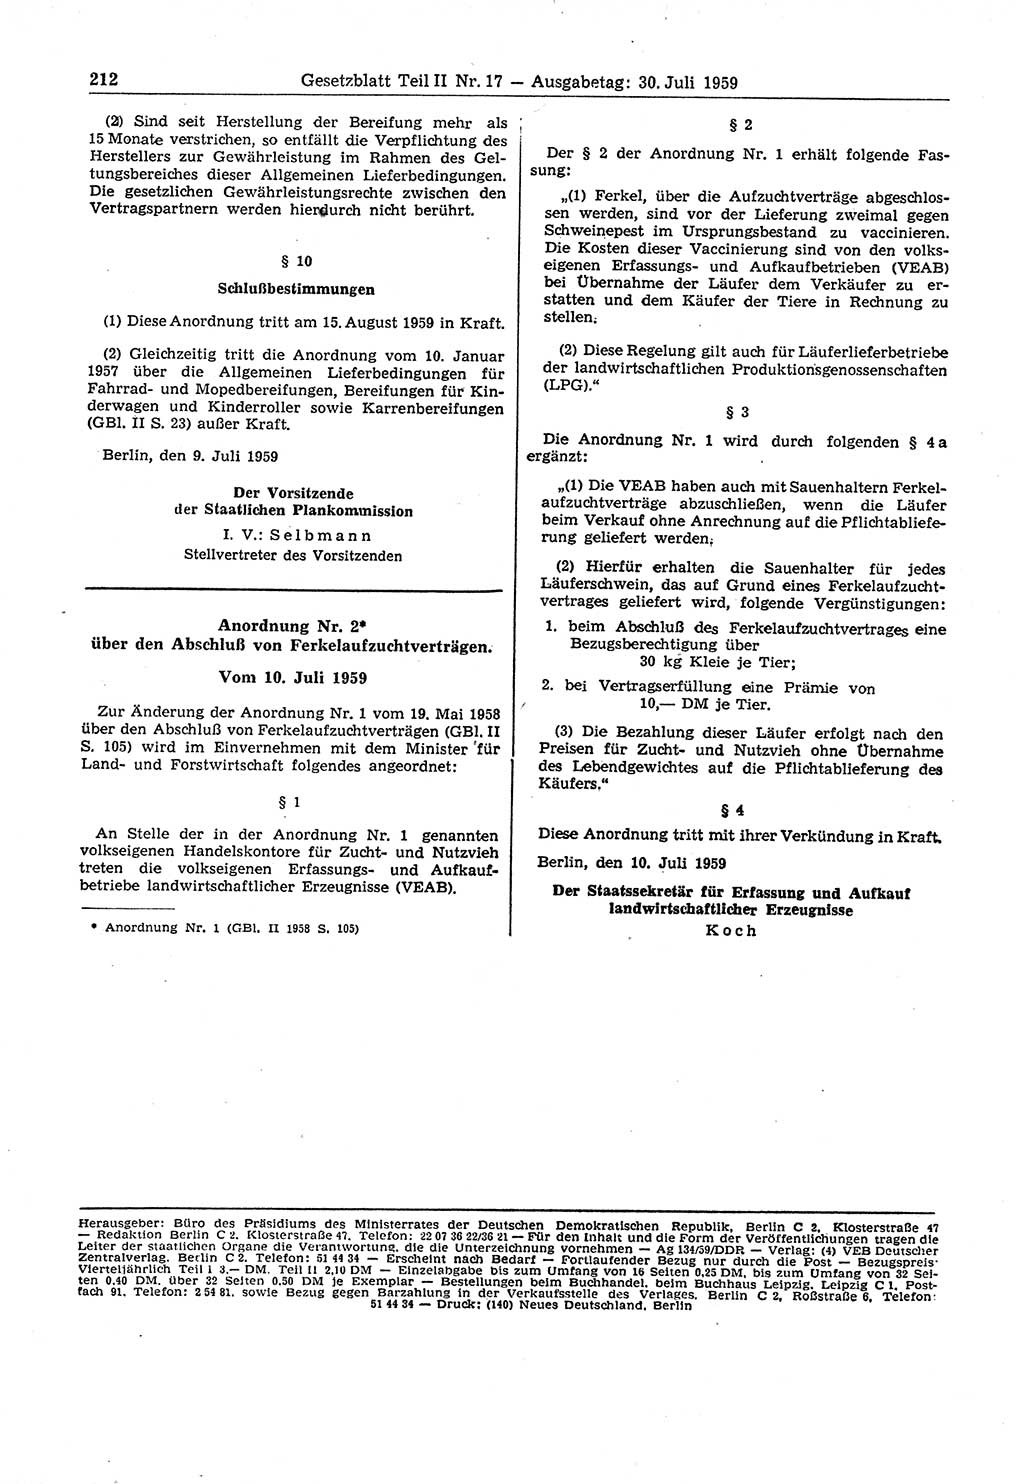 Gesetzblatt (GBl.) der Deutschen Demokratischen Republik (DDR) Teil ⅠⅠ 1959, Seite 212 (GBl. DDR ⅠⅠ 1959, S. 212)